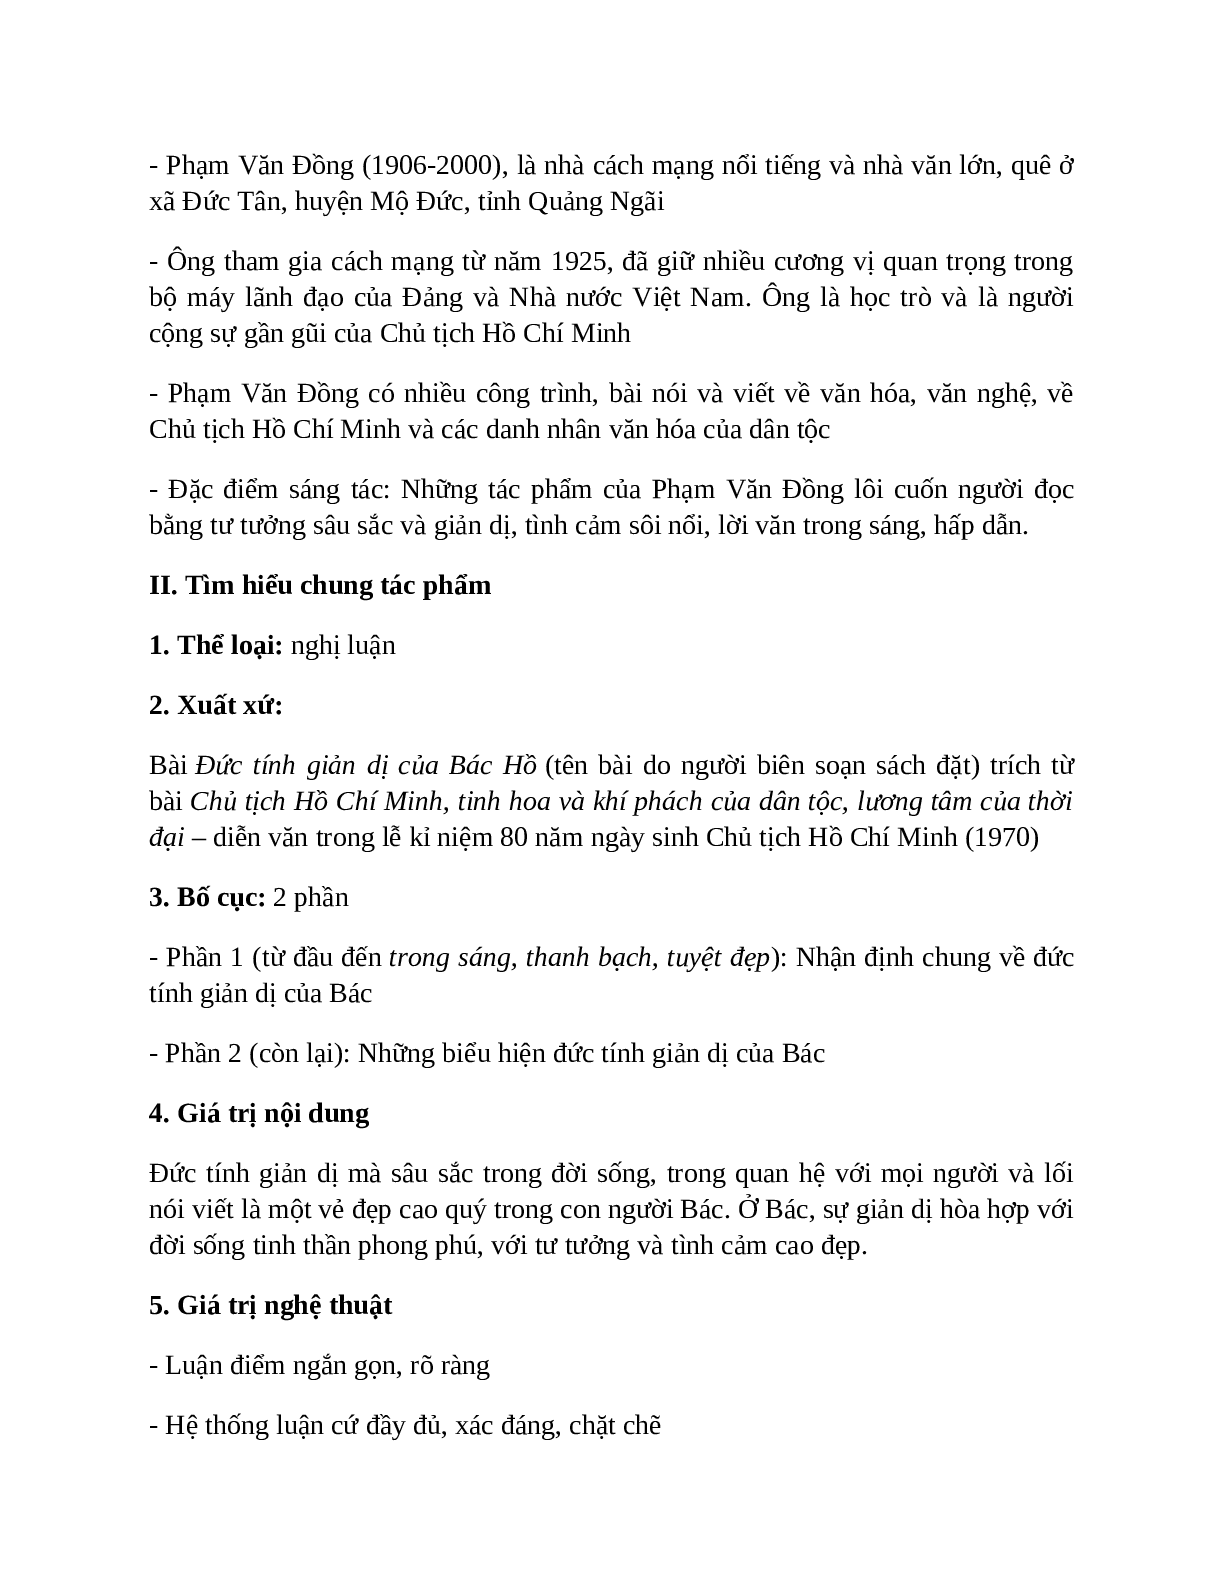 Sơ đồ tư duy bài Đức tính giản dị của Bác Hồ dễ nhớ, ngắn nhất - Ngữ văn lớp 7 (trang 2)